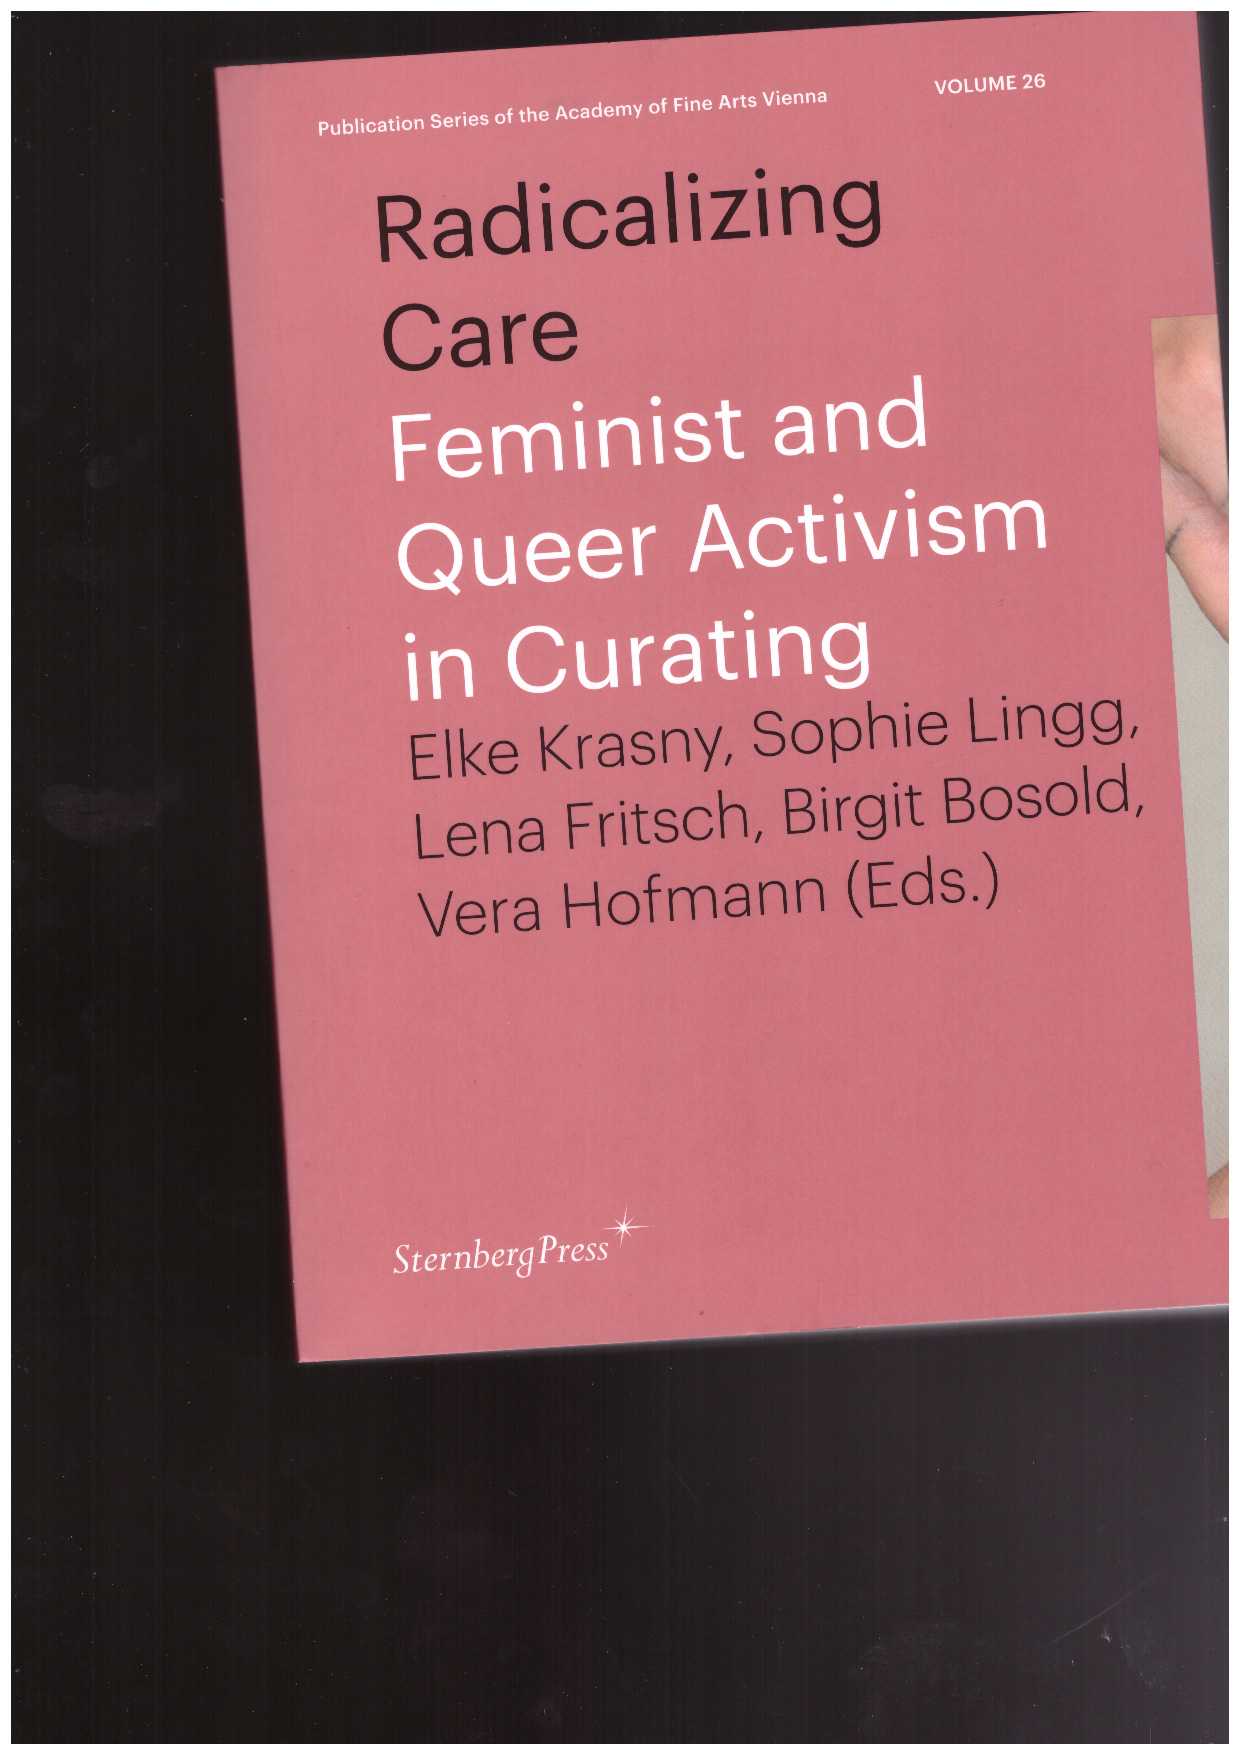 BOSOLD, Birgit; FRITSCH, Lena; HOFMANN, Vera; KRASNY, Elke; LINGG, Sophie (eds.) - Radicalizing Care. Feminist and Queer Activism in Curating